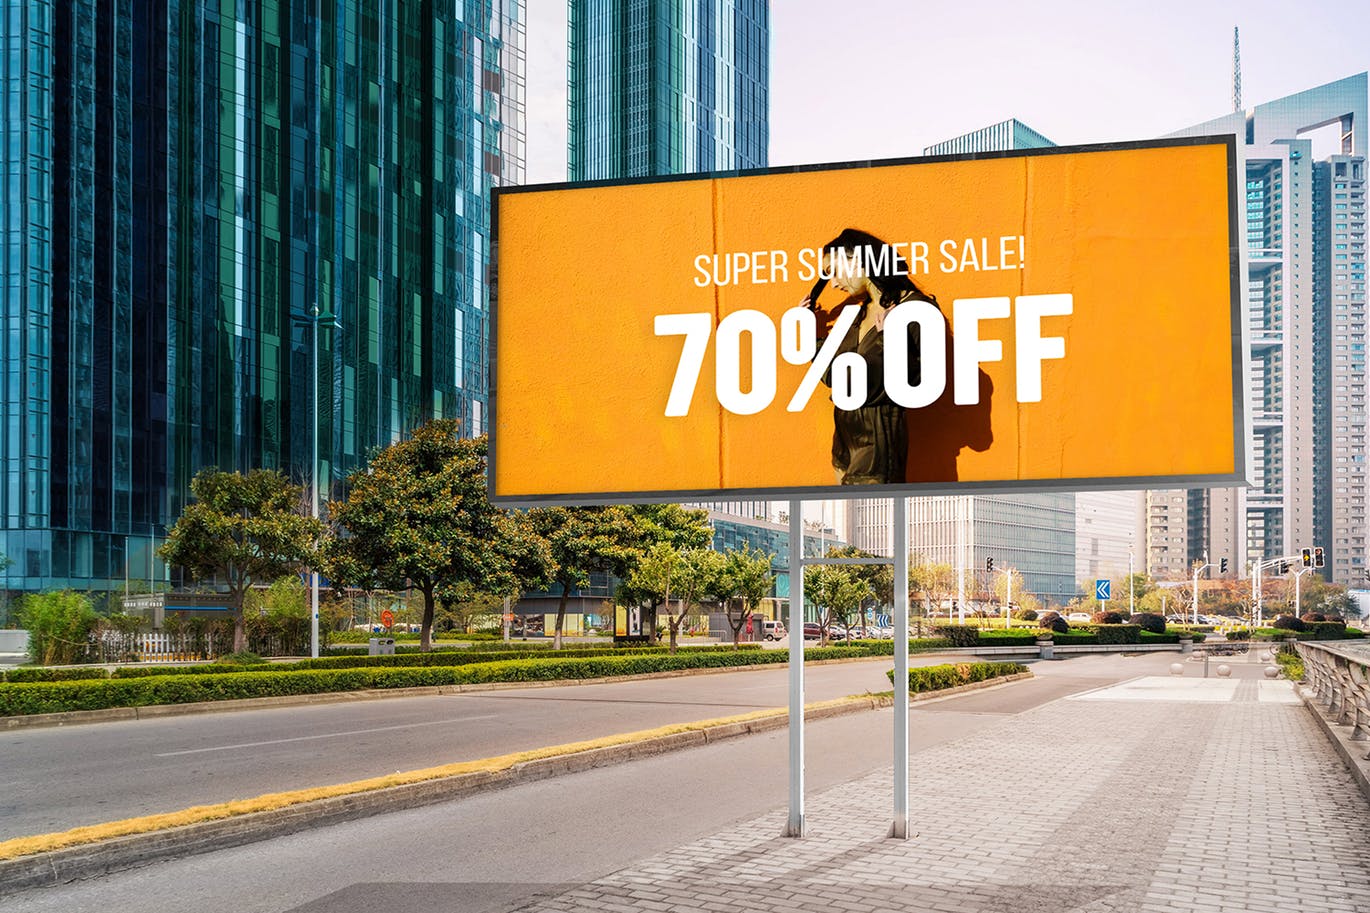 户外公路大型广告牌广告设计展示效果图样机 Advertising Billboard Mockup插图3